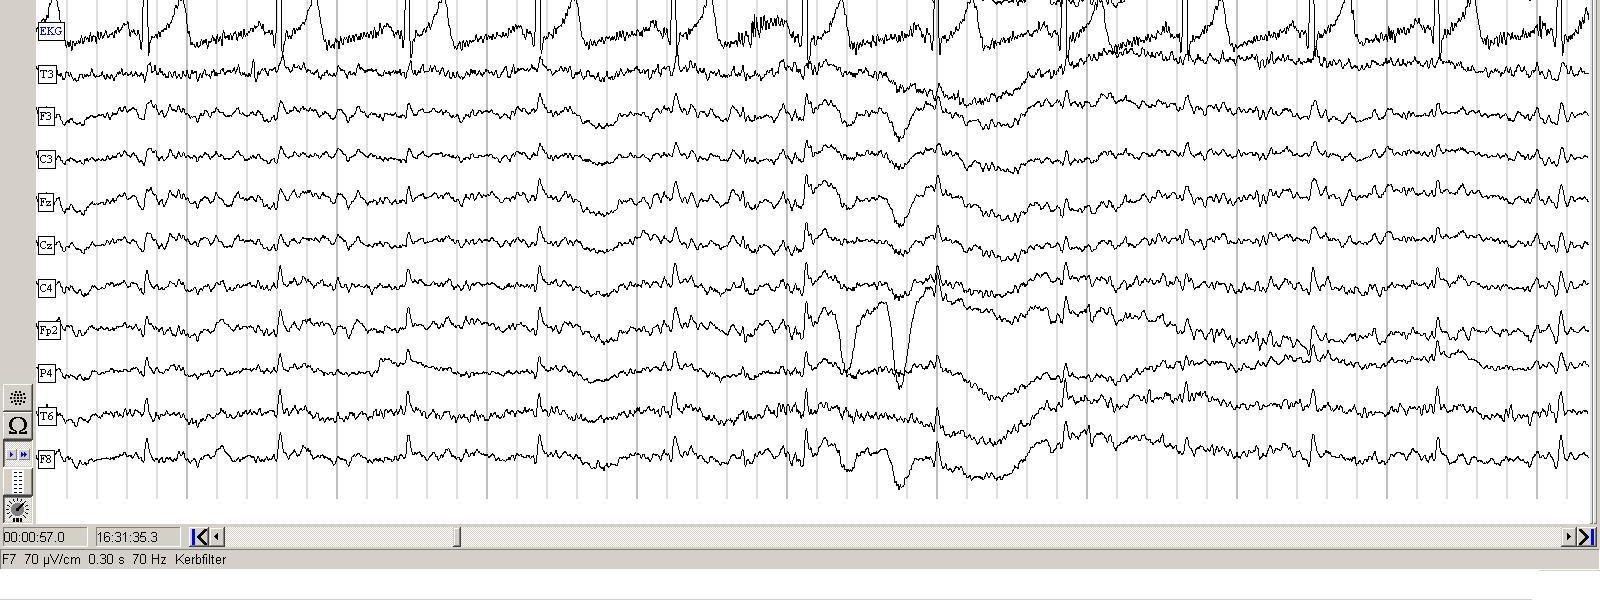 4 Konzept für Einsatz eines EEG-Gerätes in einem Usability-Labor 50 4.